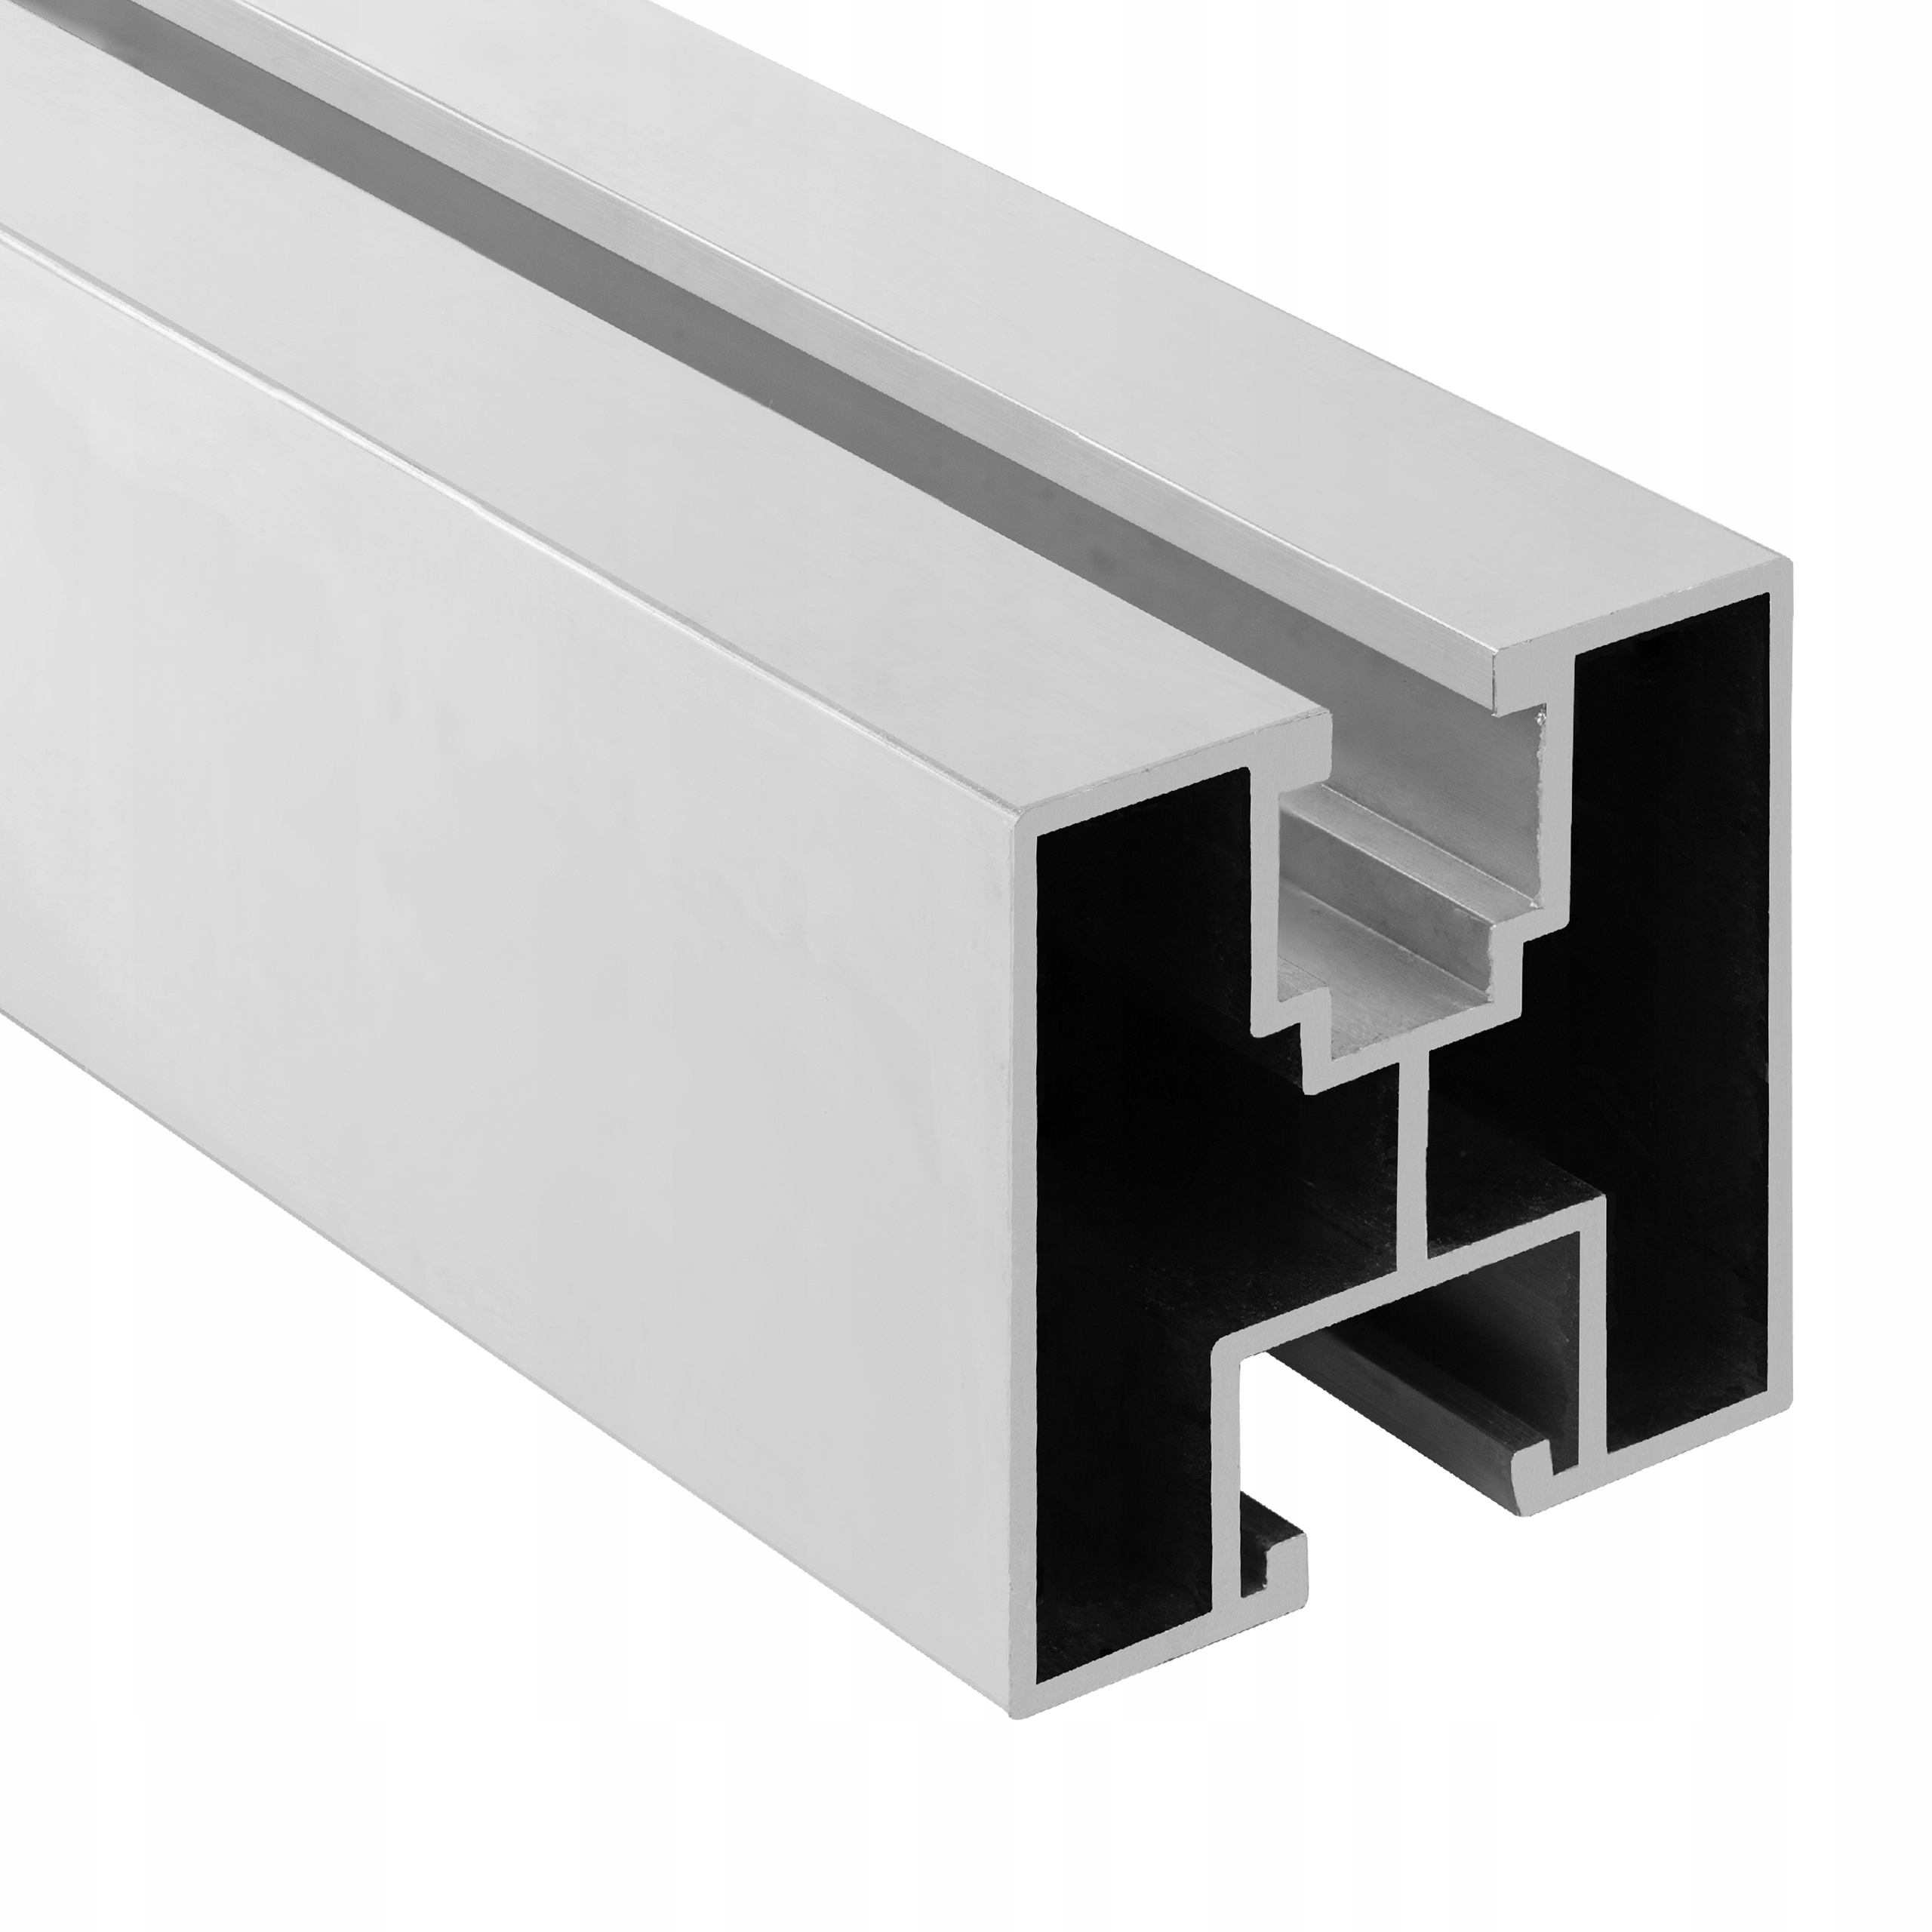 Profil montażowy PV szyna aluminiowa 40x40 2070mm (P4040-207) • Cena, Opinie • Alternatywne źródła energii 9288795758 • Allegro